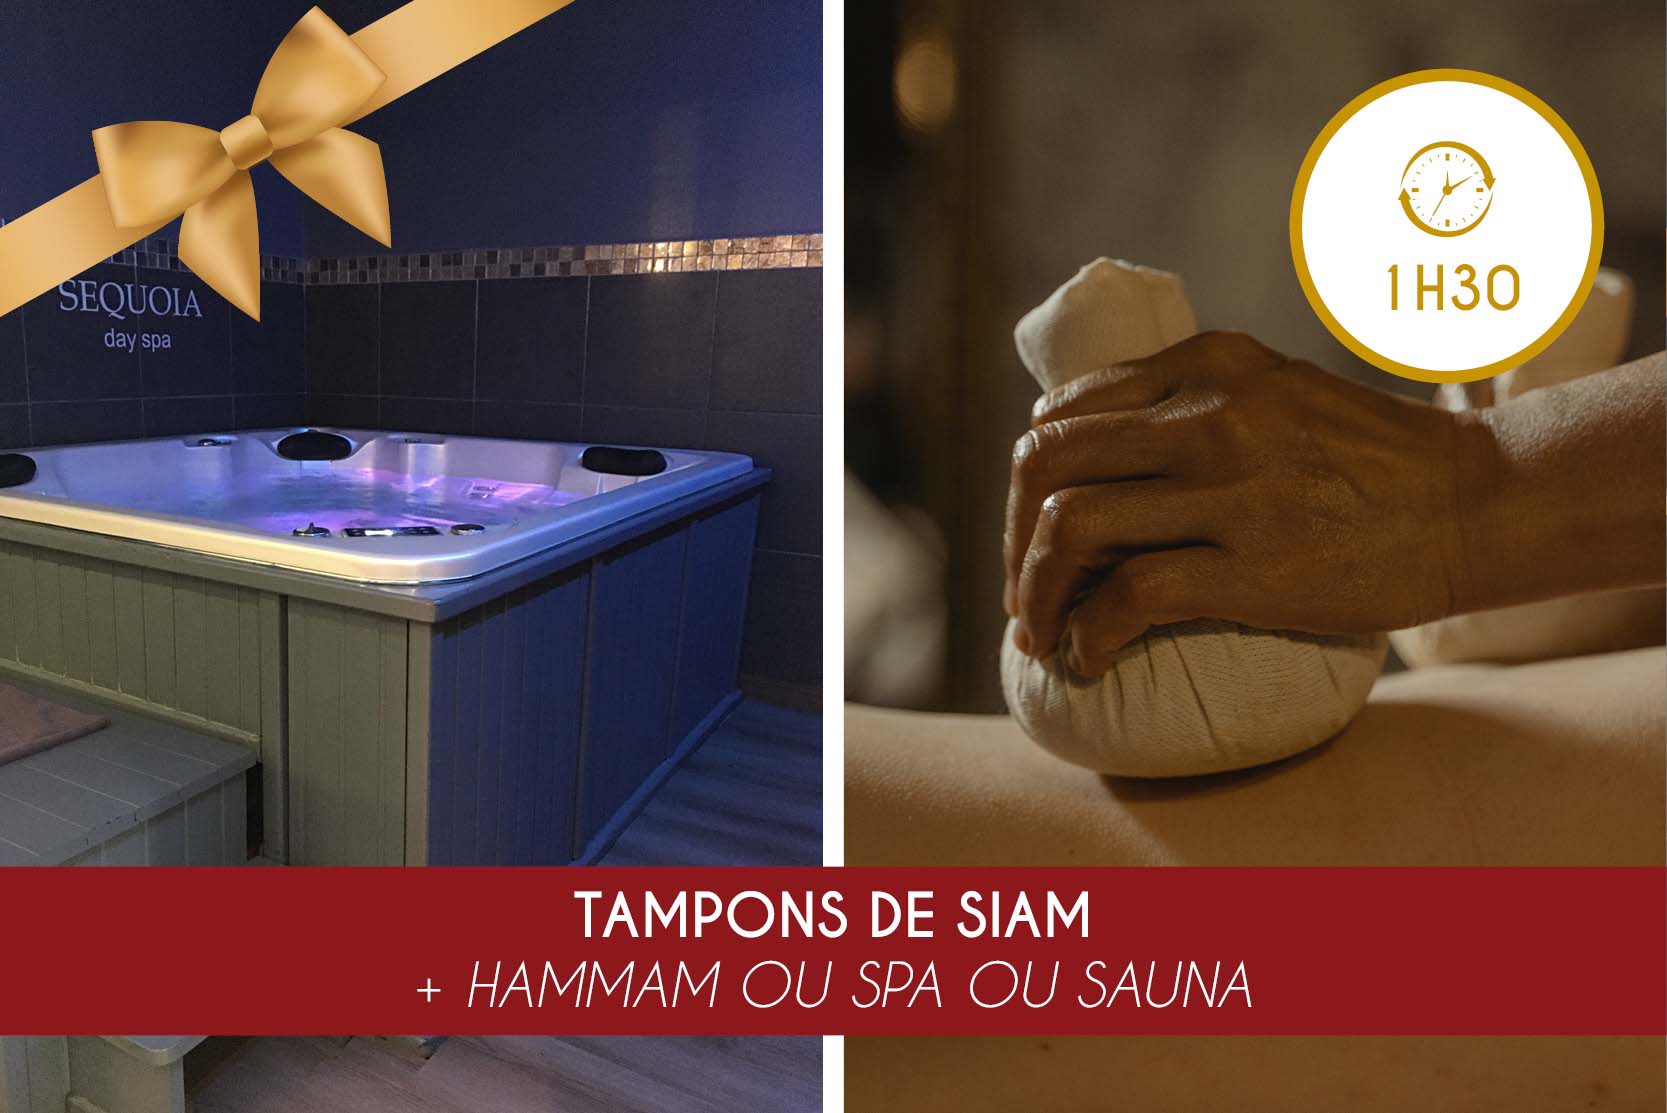 TAMPONS DE SIAM (1H00) + HAMMAM OU SPA